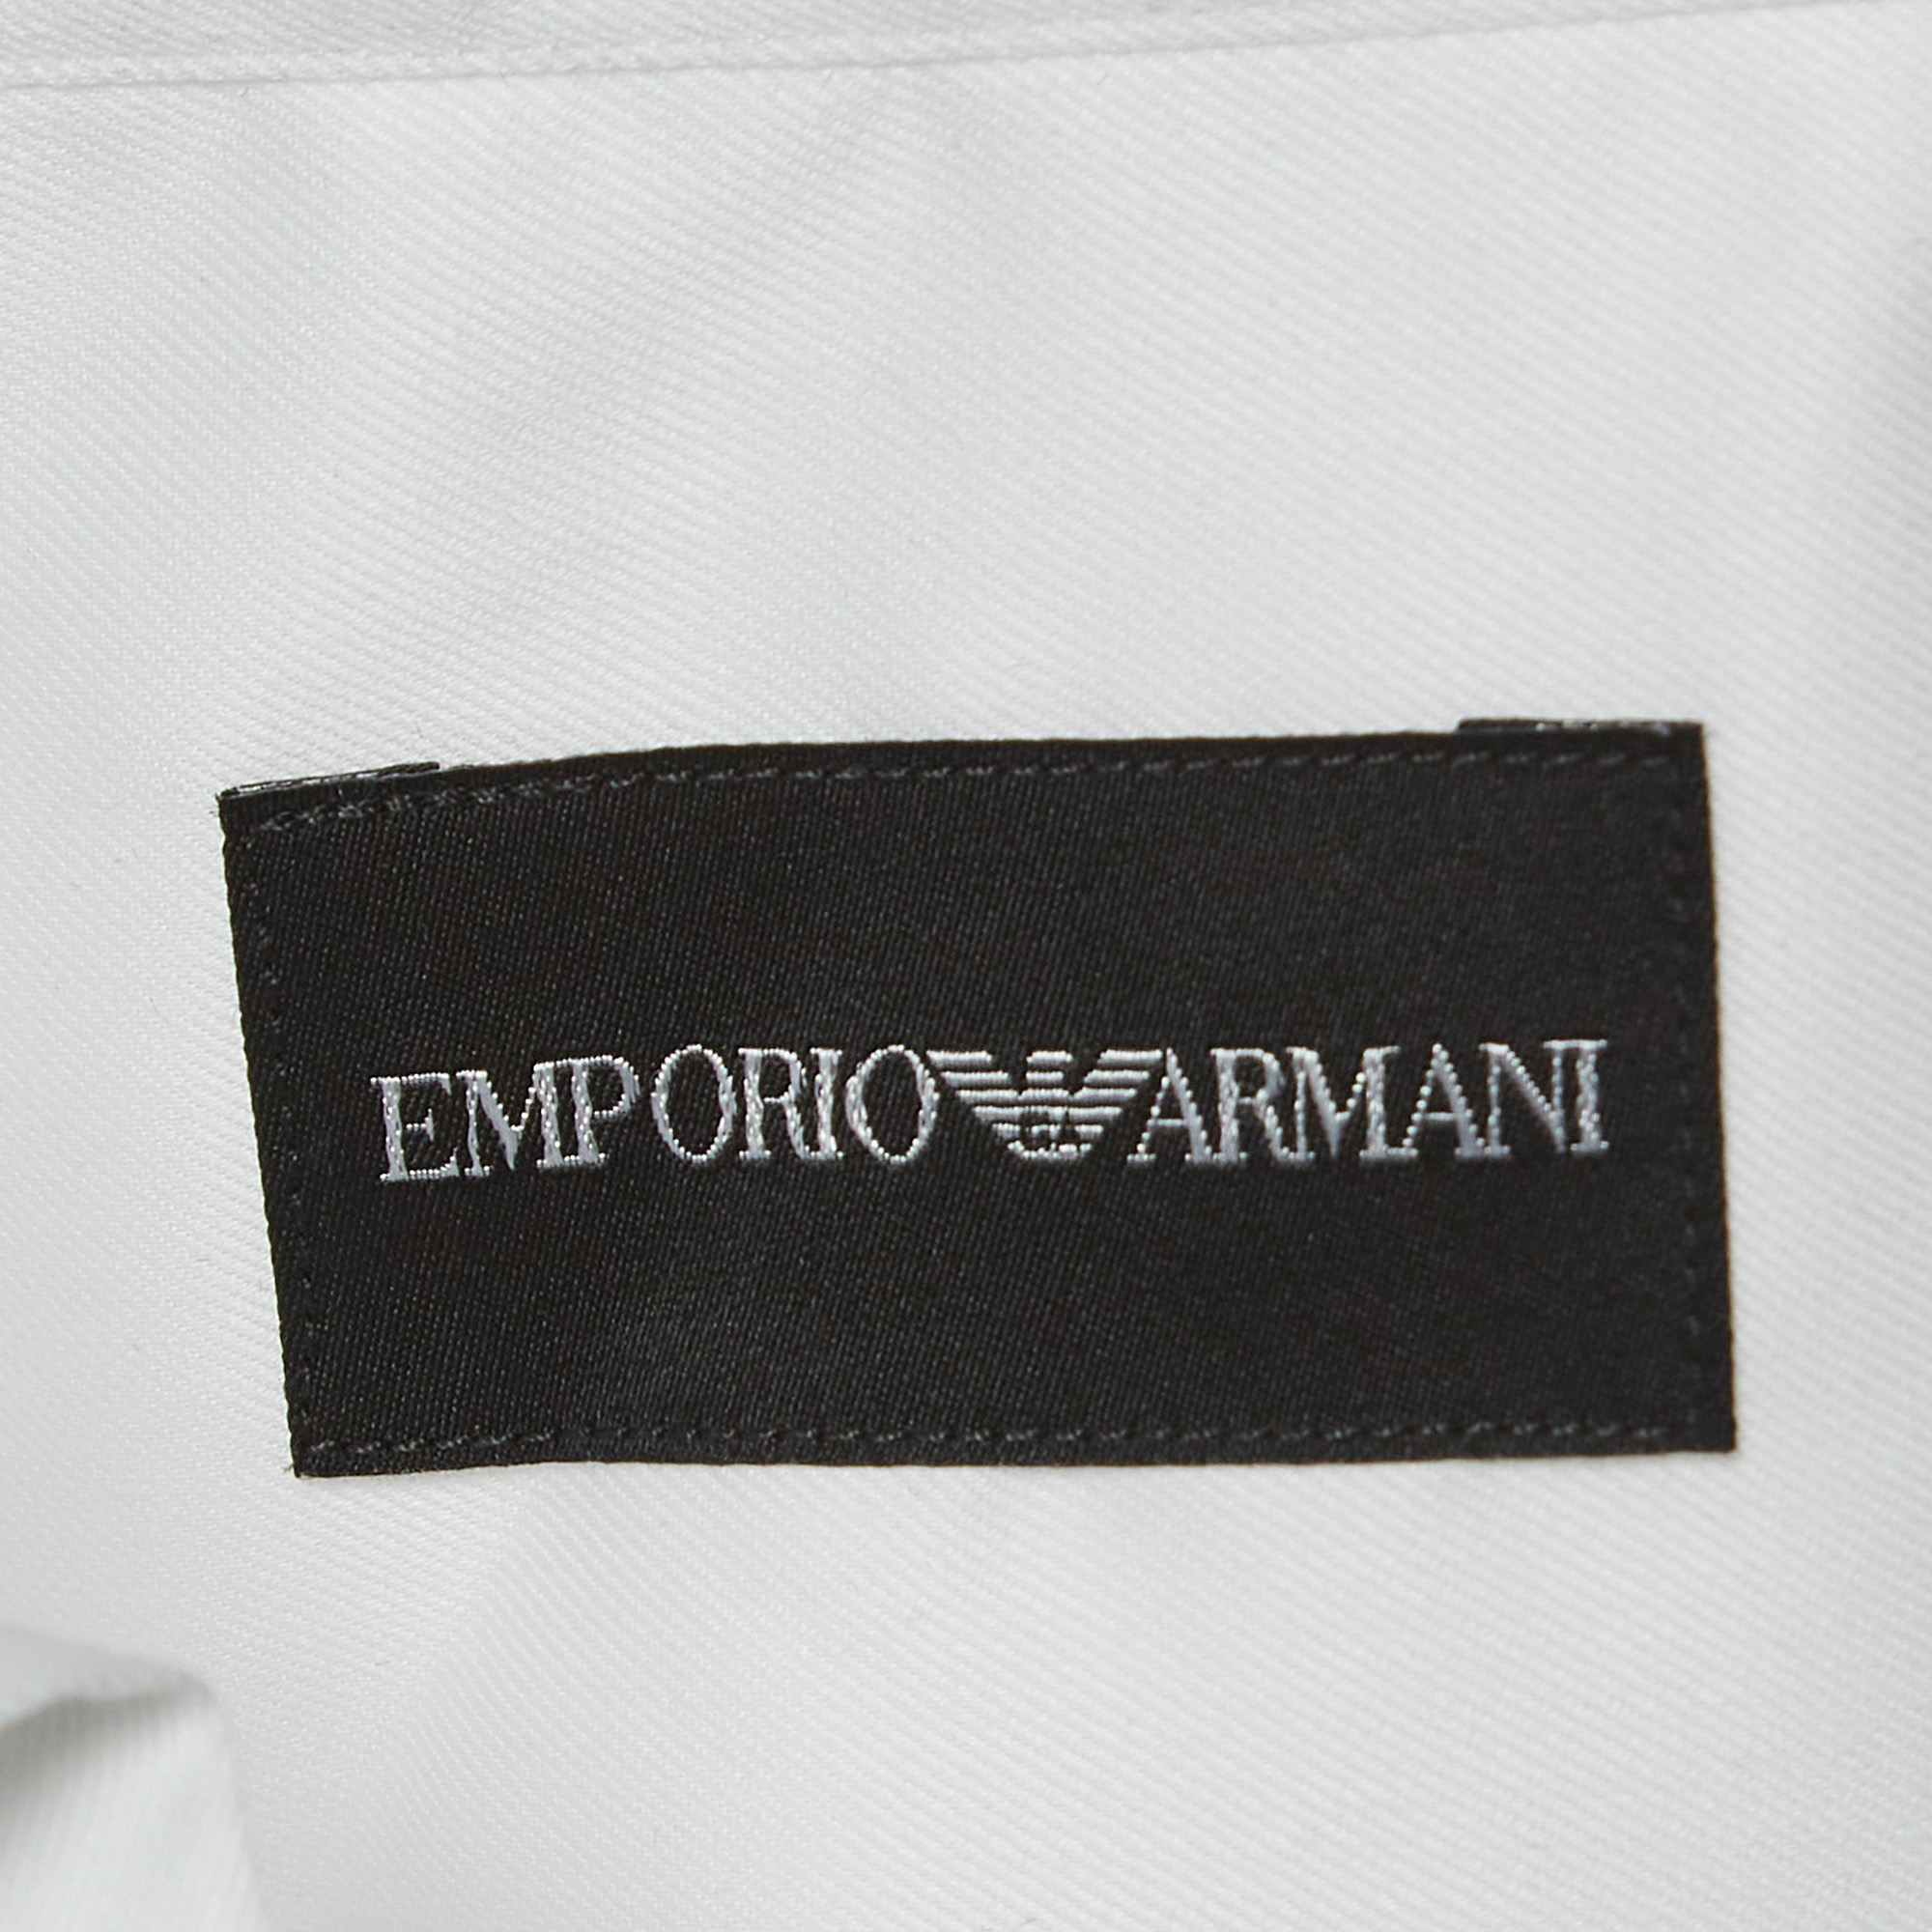 Emporio Armani White Cotton No Iron Button Front Shirt M